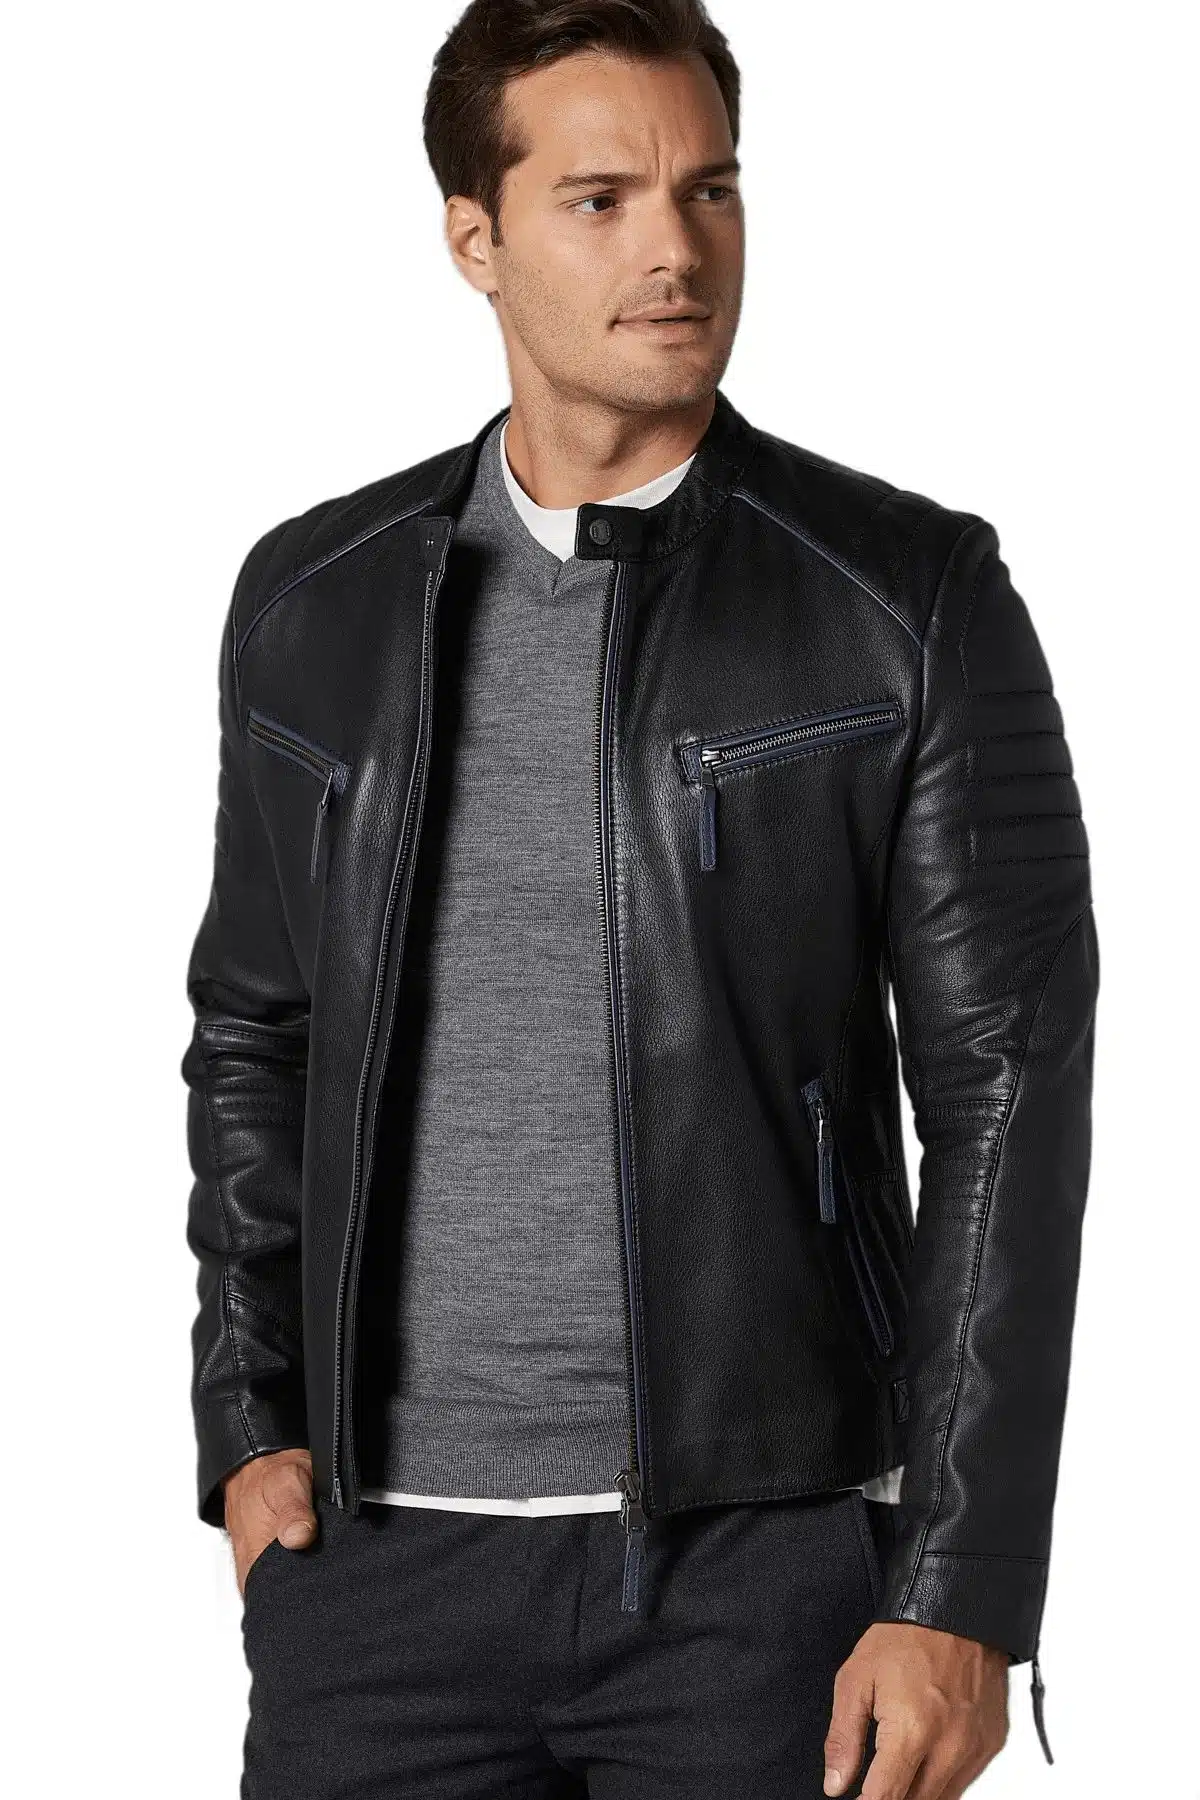 Men's 100 % Real Black Leather Sport Dazzling Jacket